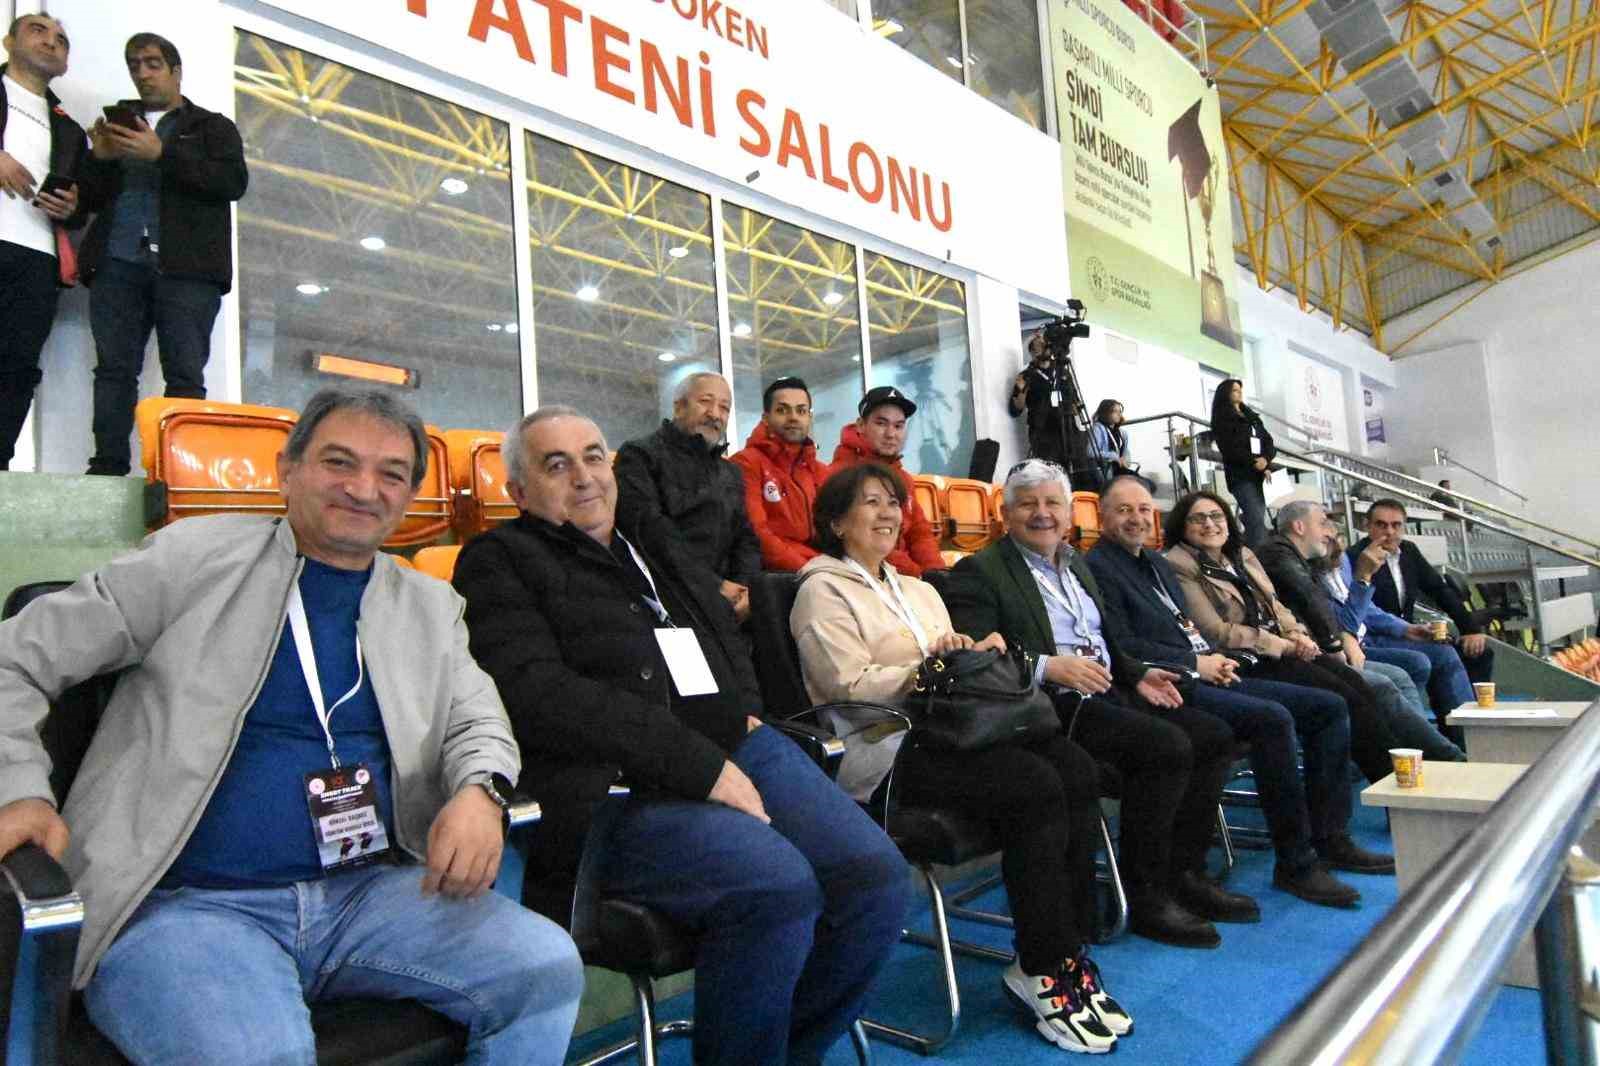 Short Track Türkiye şampiyonası, Erzurum’da başladı